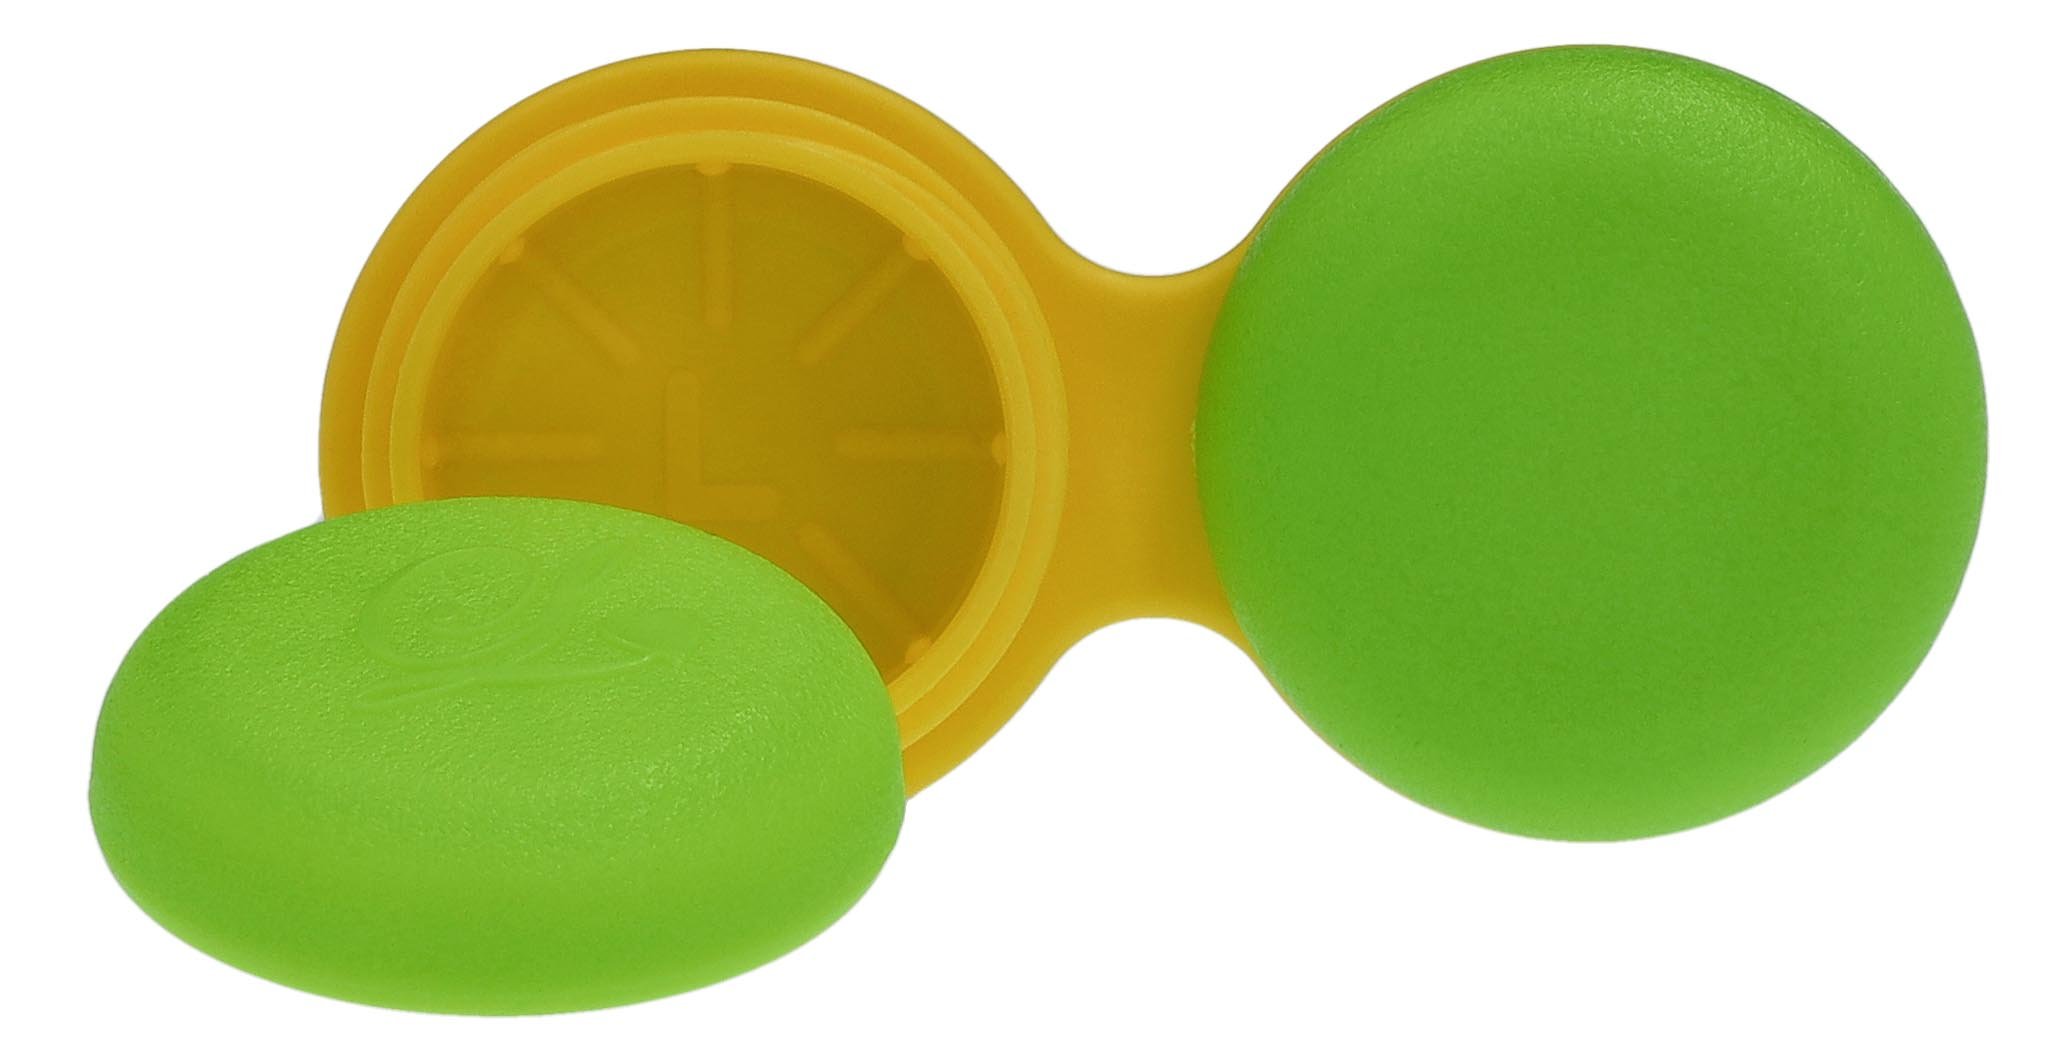 Kontaktlinsenbehälter flach in grün / gelb